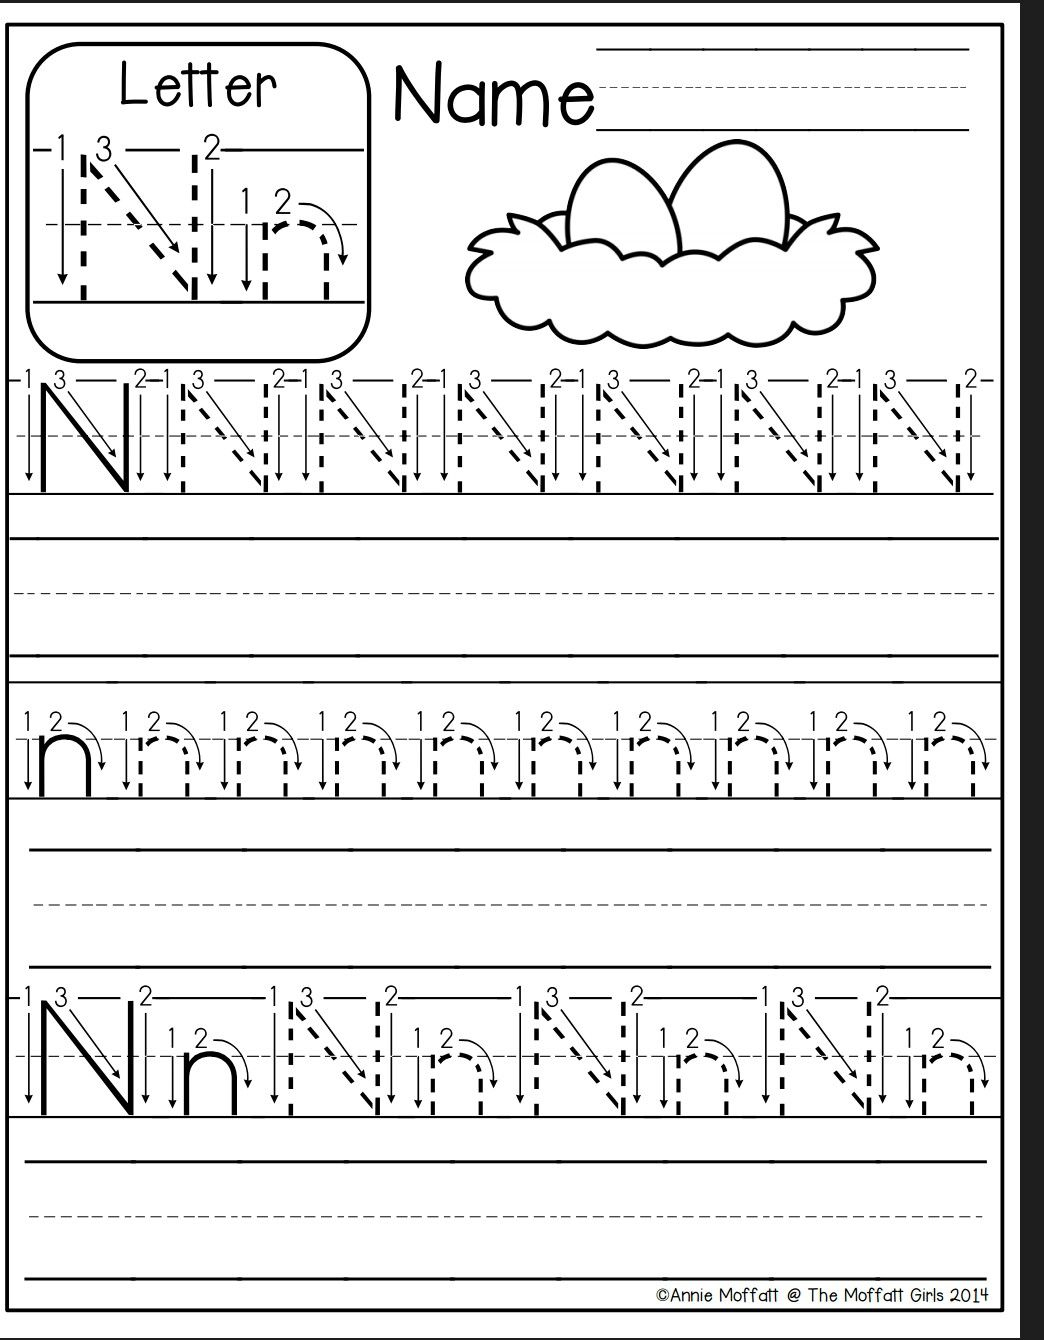 Letter N Worksheet | Letter N Worksheet, Preschool Writing regarding Letter N Worksheets For Kindergarten